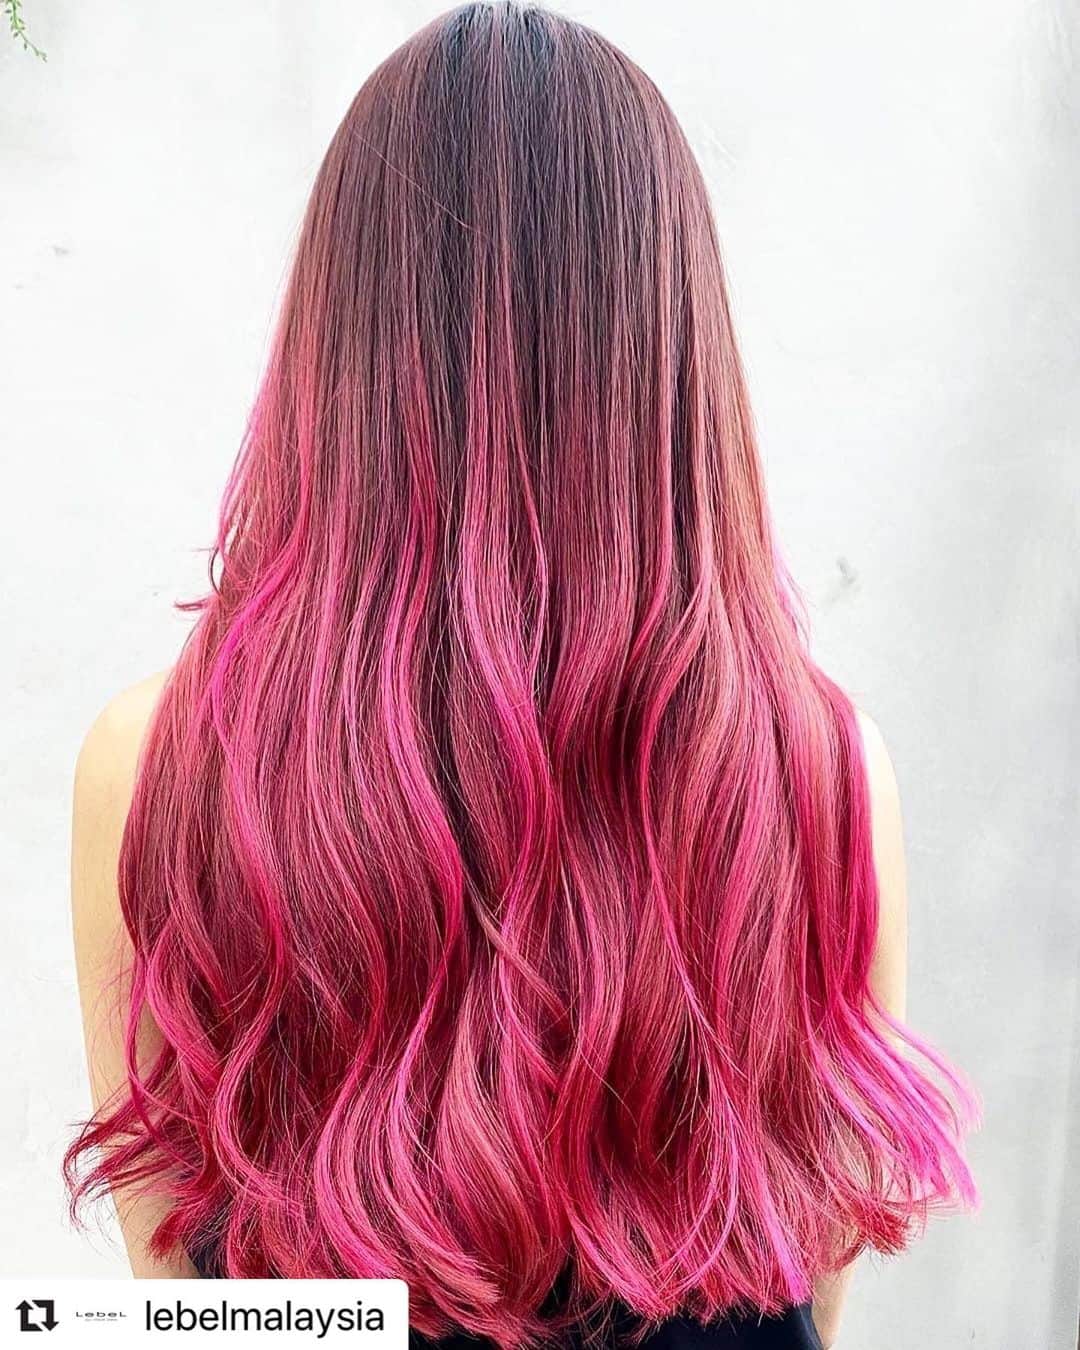 ロコル公式アカウントのインスタグラム：「#Repost @lebelmalaysia with @make_repost ・・・  I like your color style.   Let me repost.  素敵なカラーデザインですね！  リポストさせて頂きます。  #ロコル #locor #ヘアカラー #haircolor #外国人風カラー #外国人スタイル  #サロンカラー　#saloncolor #バレイヤージュ　#balayage #ハイトーンカラー　#hightone  #デザインカラー　#designcolor  #color #hair #ルベル #lebel　 #タカラベルモント #takarabelmont #stay_creative  #ステイクリエイティブ #クリエイティブを続けよう」